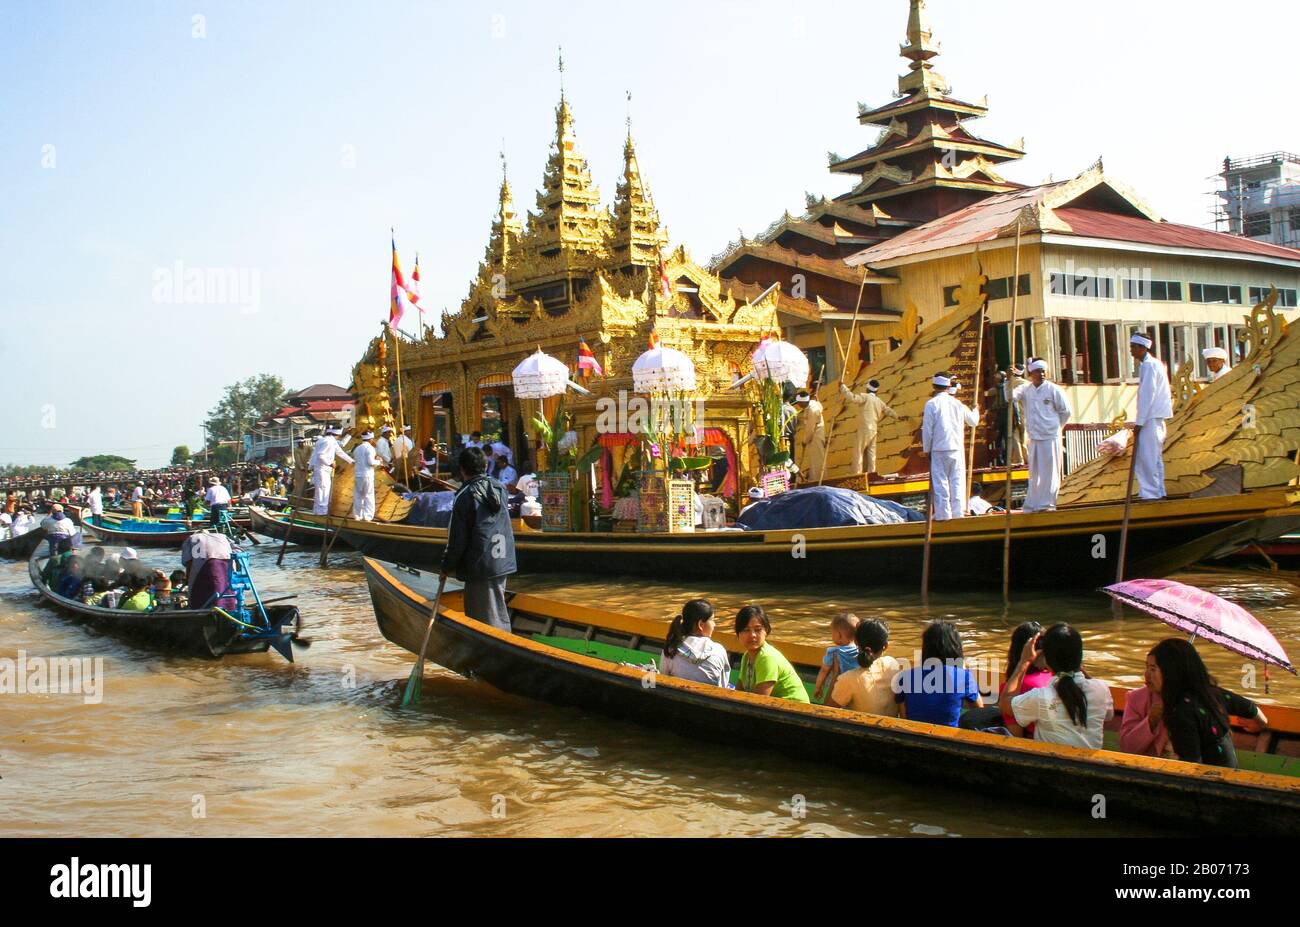 Nyaungshwe población más importante de los pueblos que rodean el Lago Inle (Birmania). En octubre se celebra el festival de la pagoda Phaung Daw O. Stock Photo